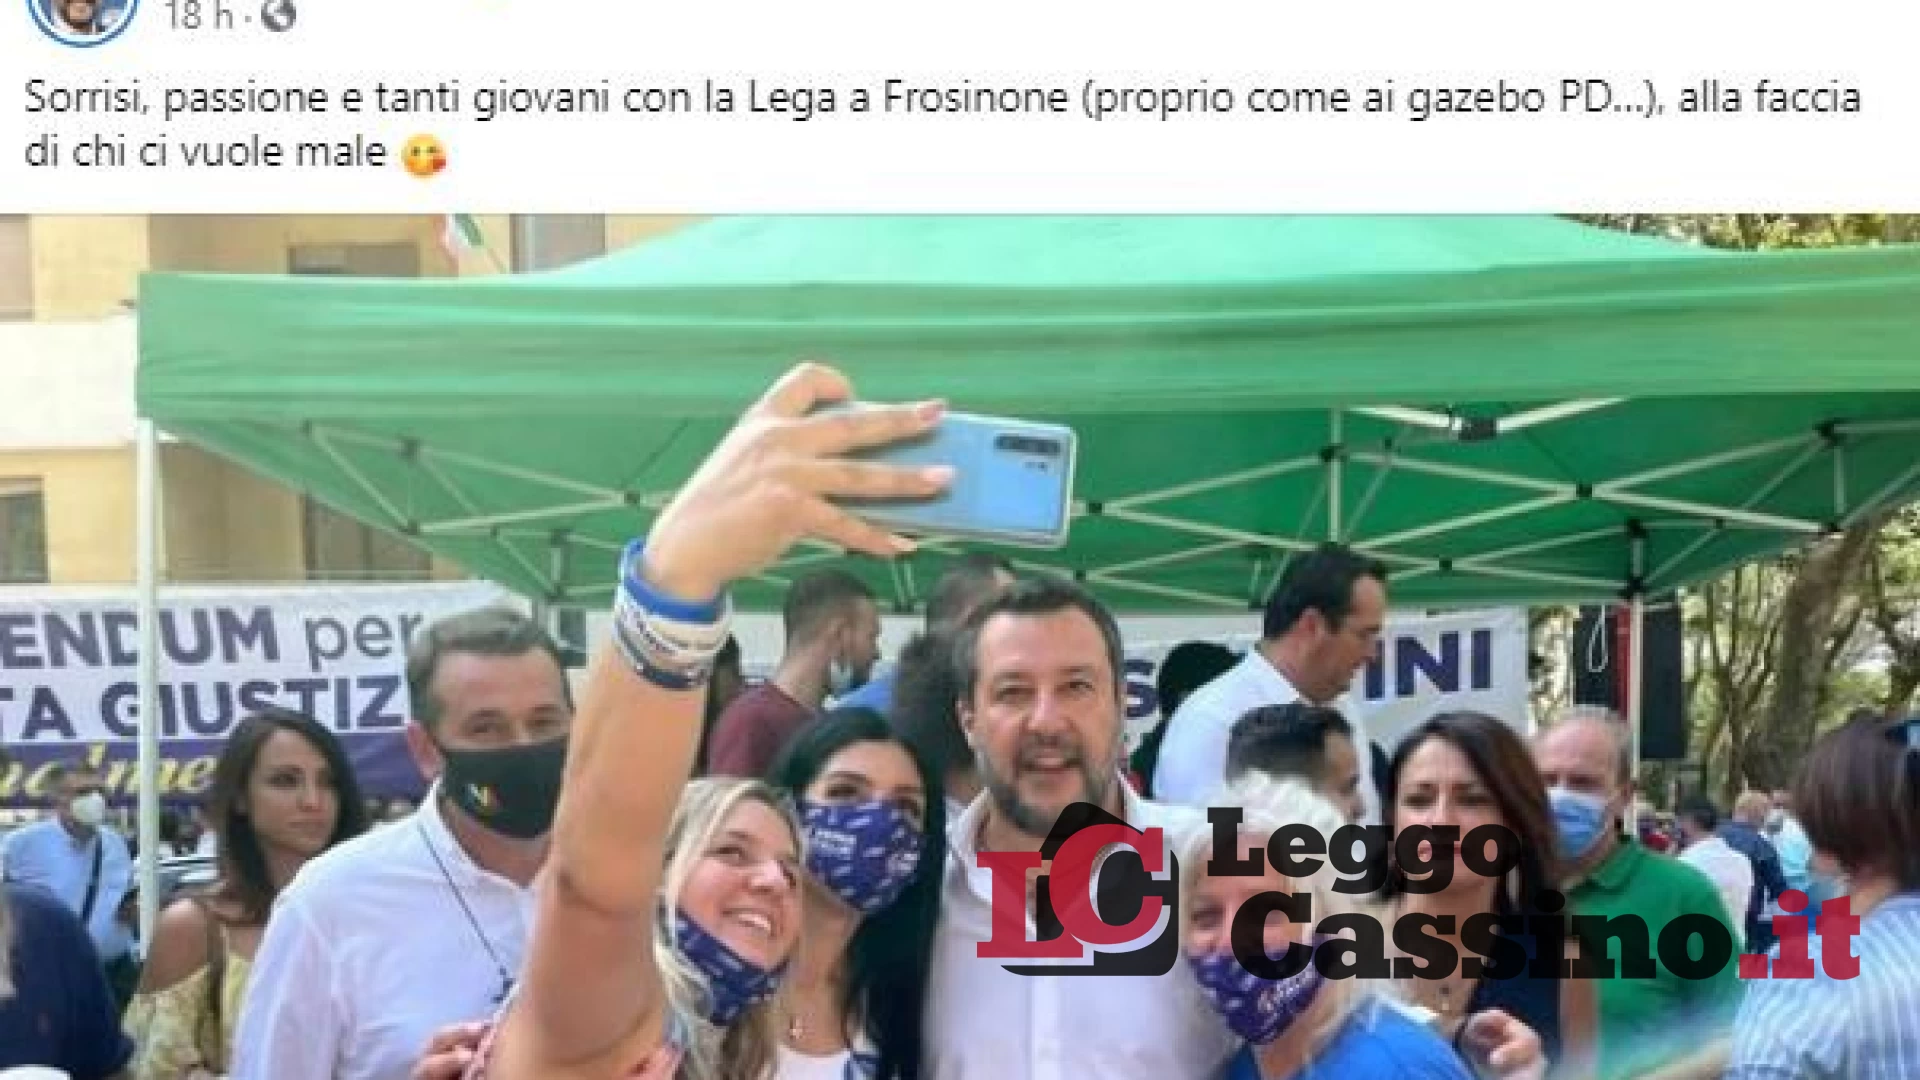 Salvini arriva a Frosinone e fa il virologo: "Sotto i 18 anni il vaccino provoca più danni che vantaggi"